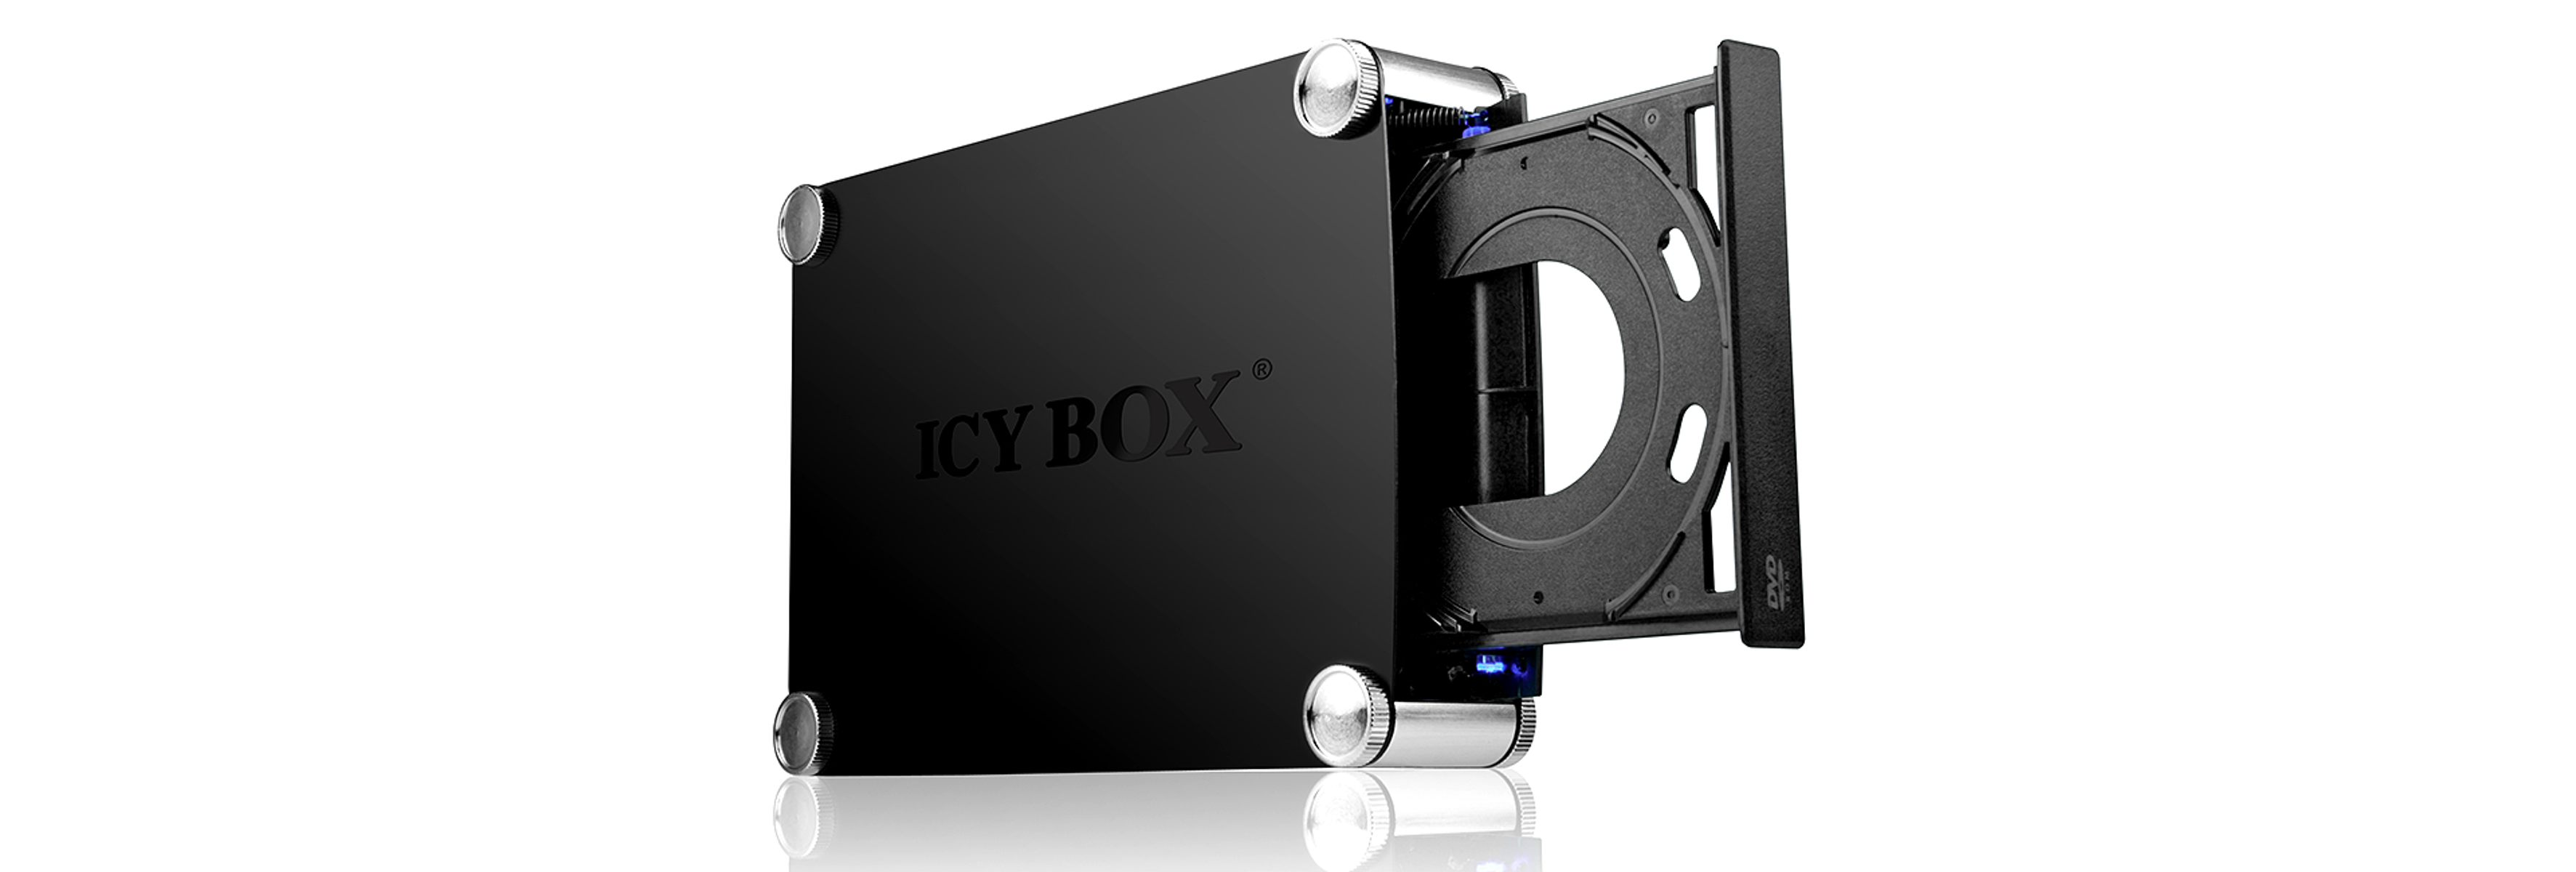 ICY BOX IB-550STU3S -steckplätze Festplattengehäuse & Schwarz